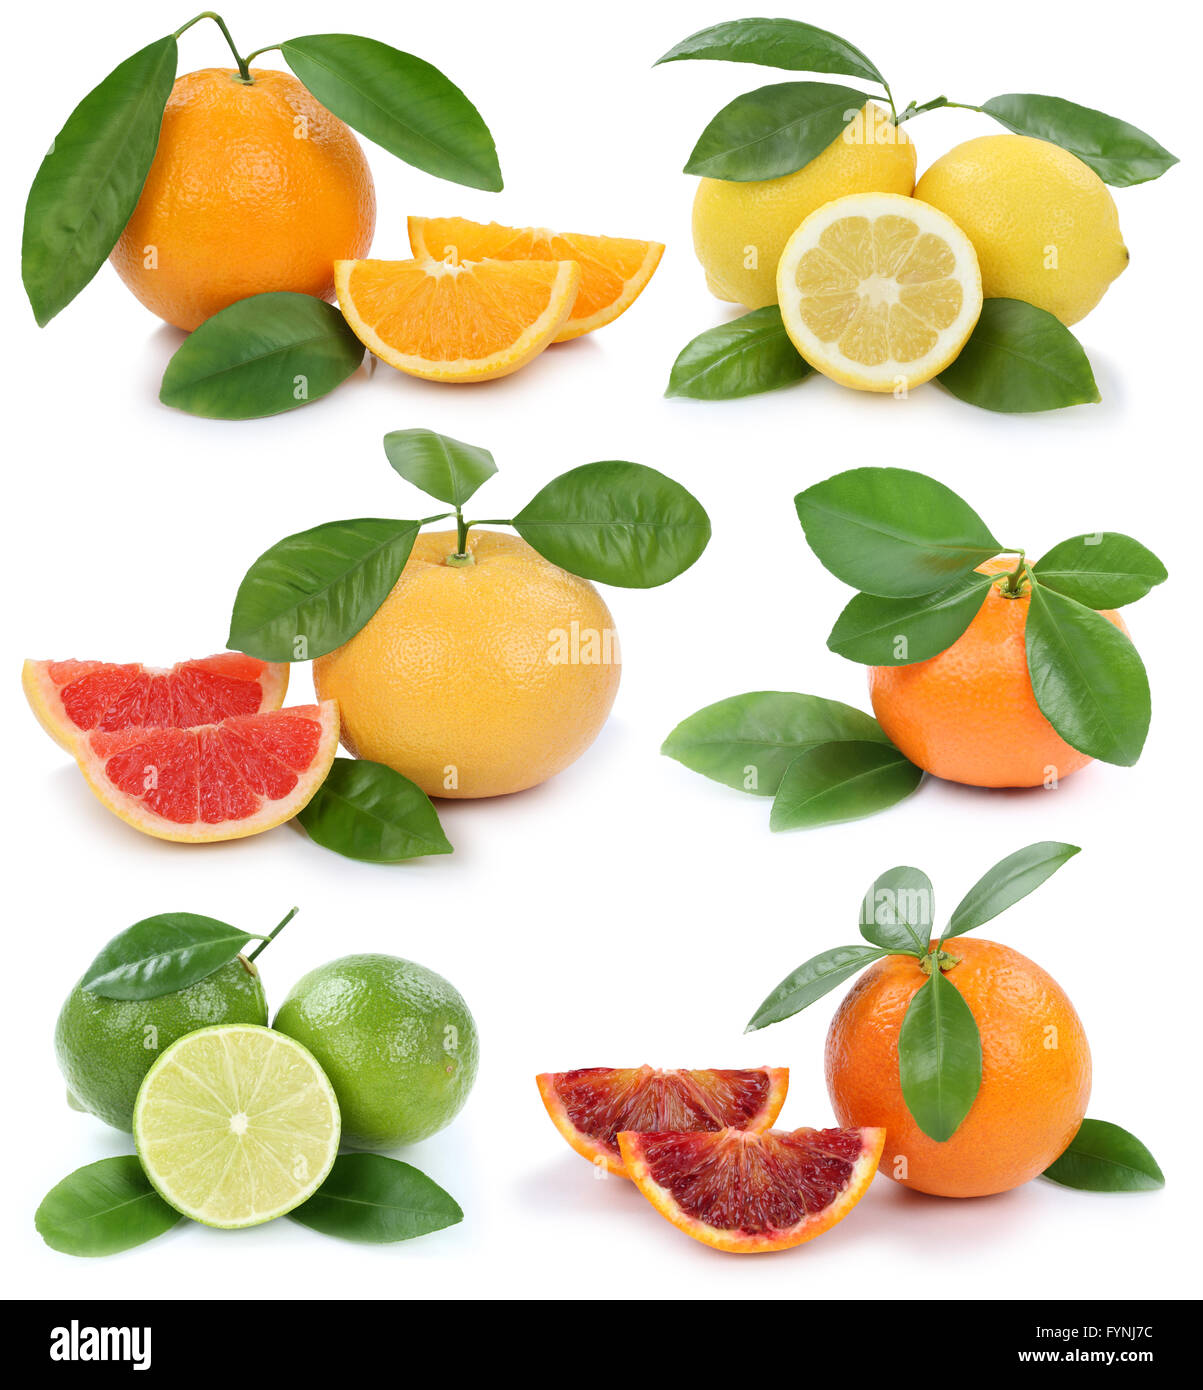 Collection of oranges mandarin lemon grapefruit organic fruits isolated on a white background Stock Photo